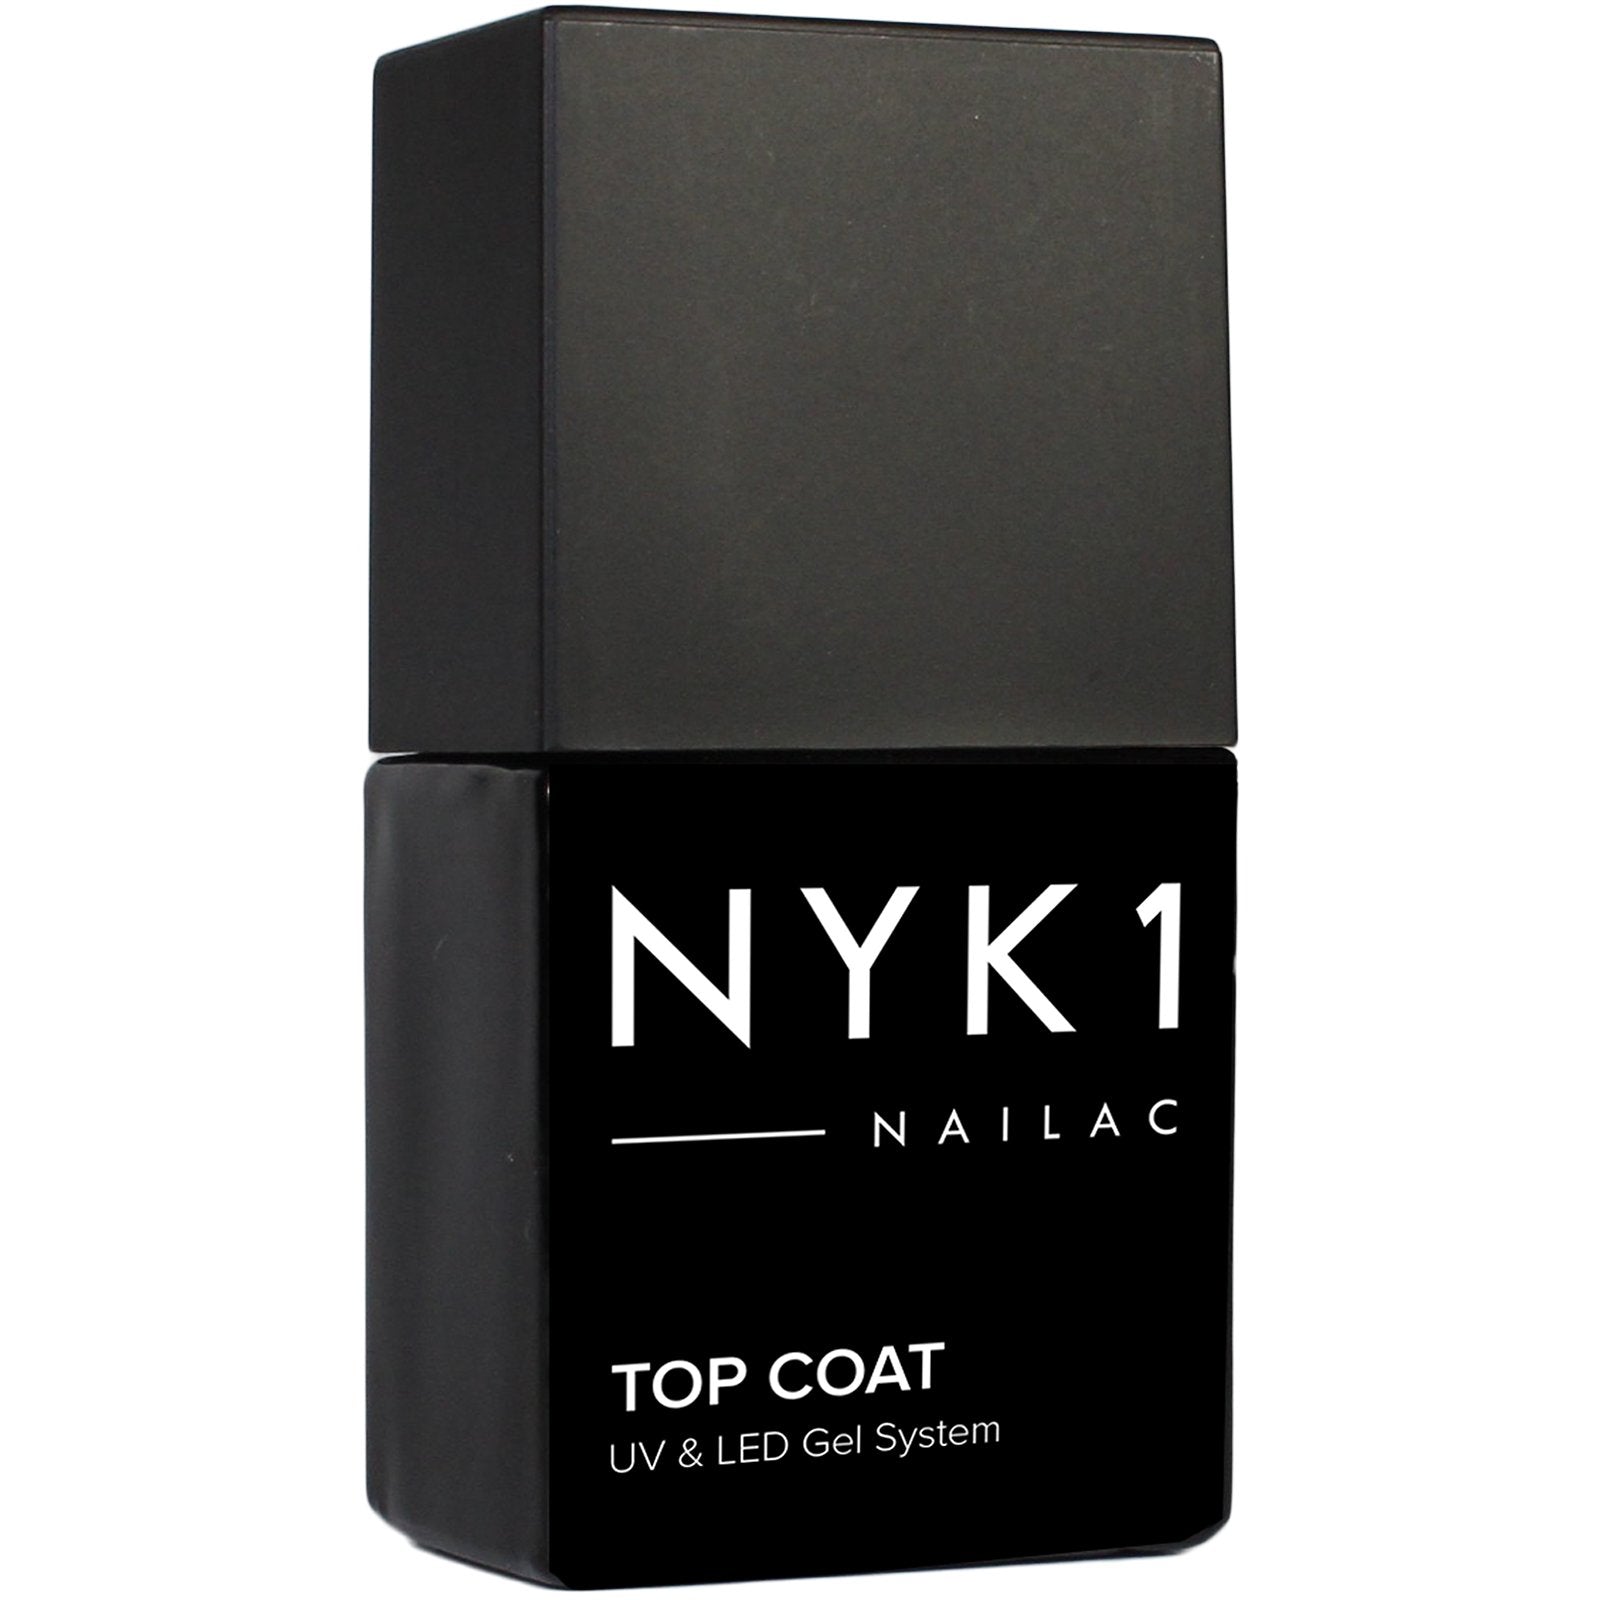 NYK1 Nailac Top Coat Clear Gel Nail Polish